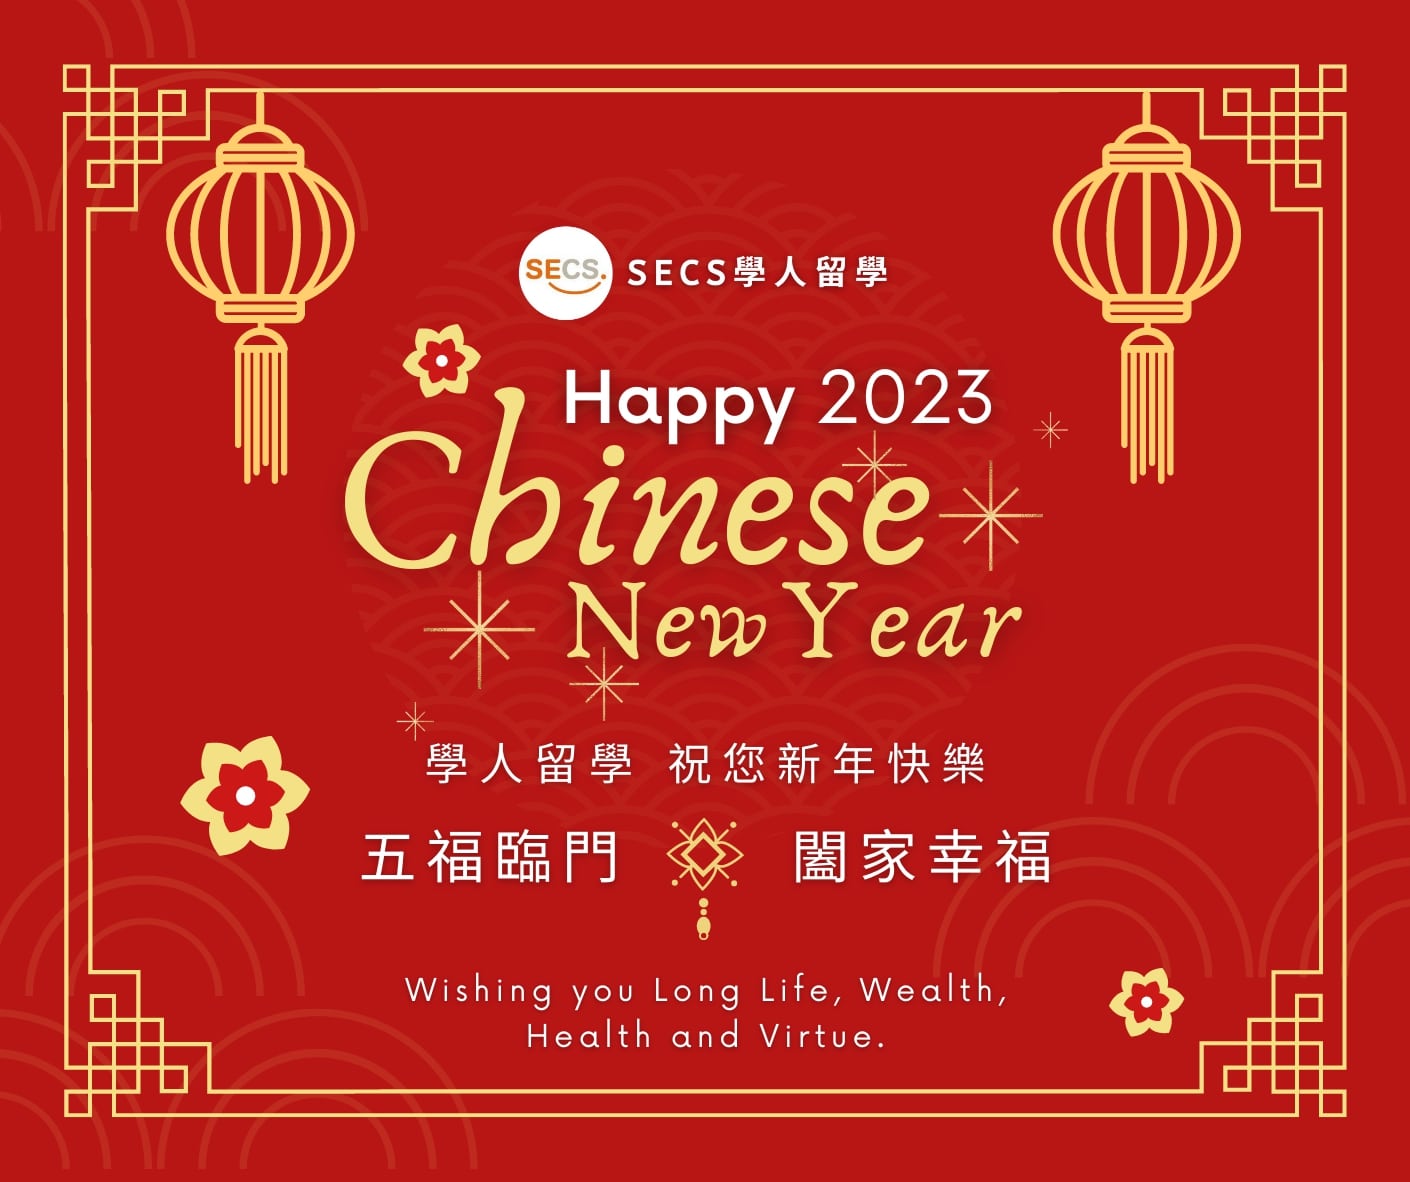 SECS_2023 Happy New Year